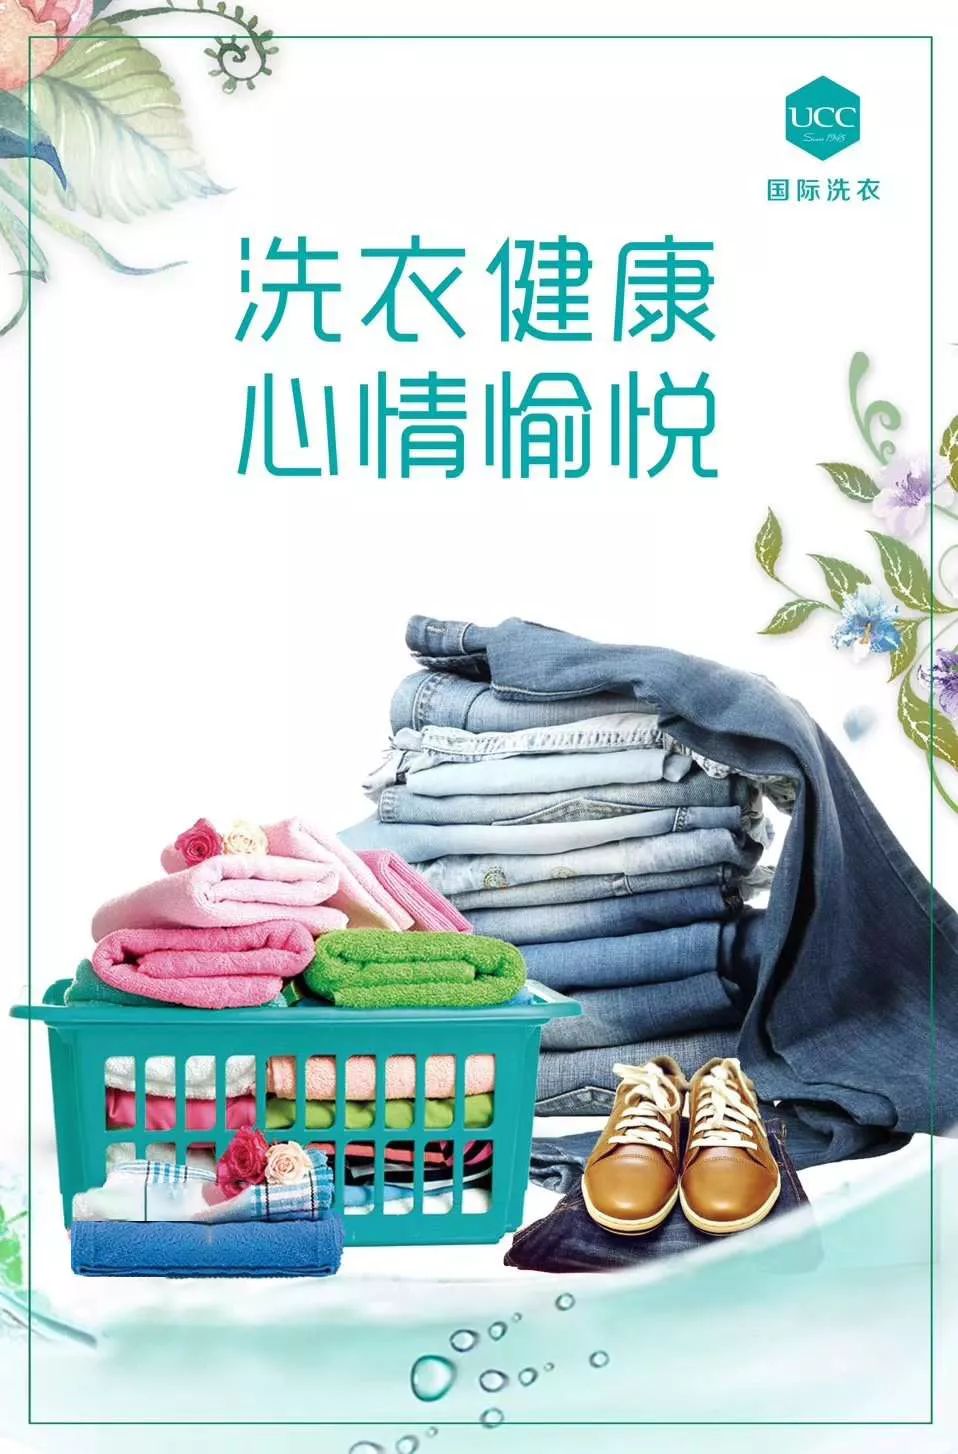 绿色健康环保洗涤是ucc国际洗衣店的全新理念,ucc国际洗衣店倡导